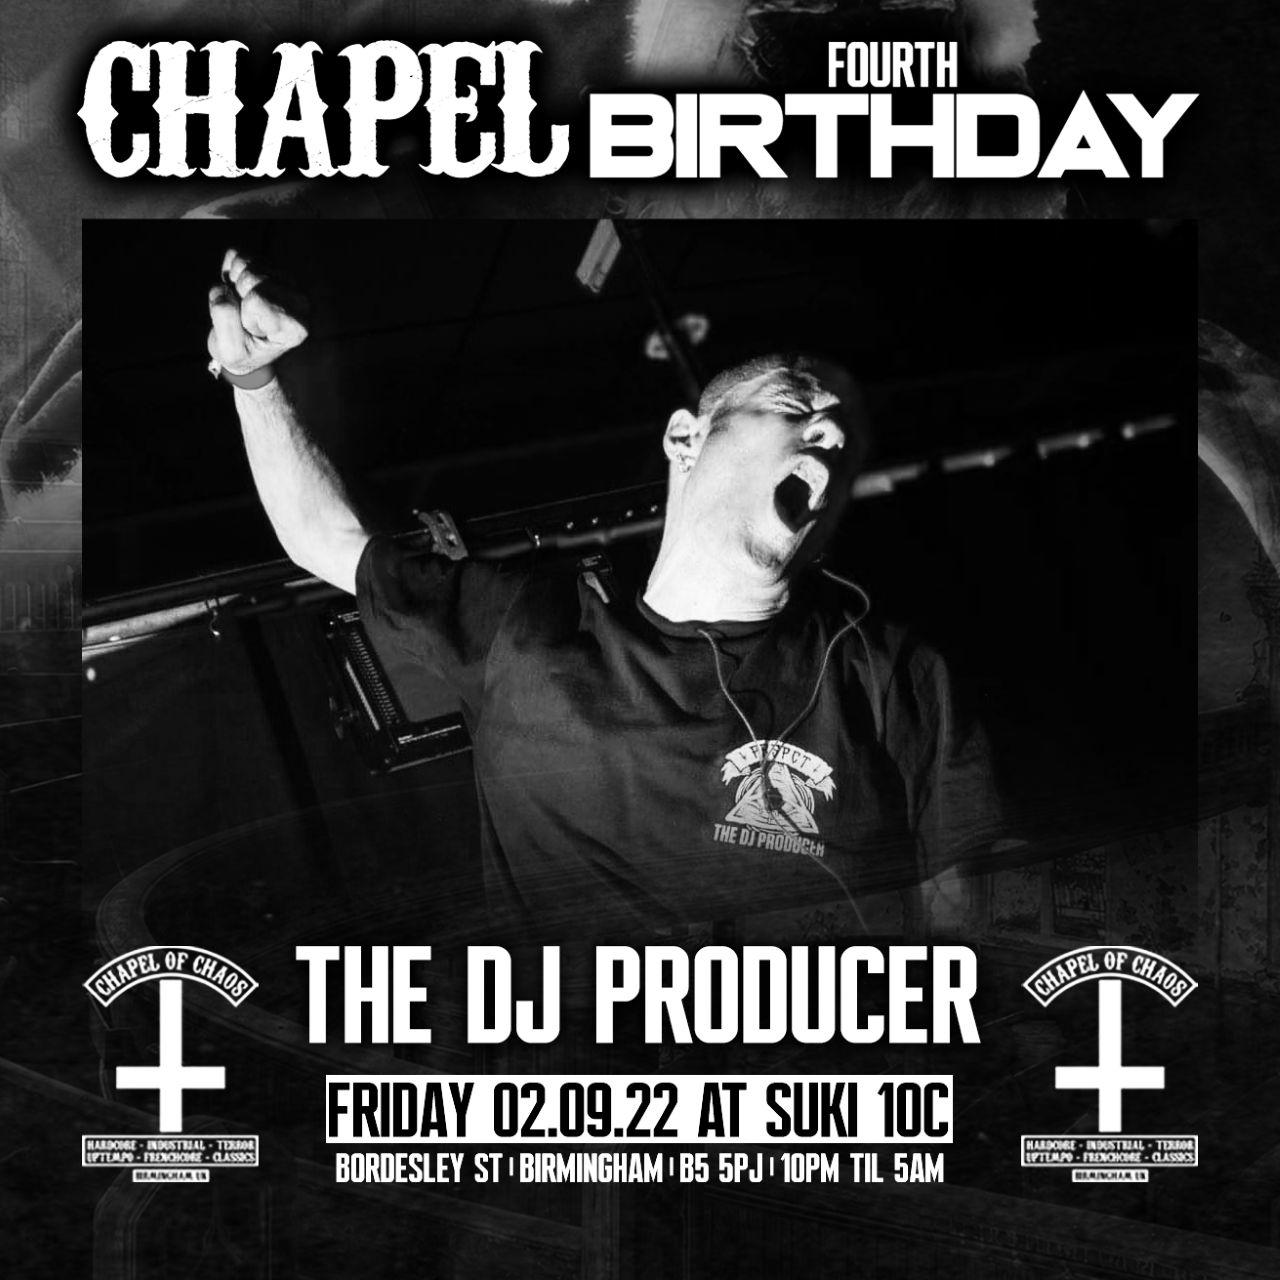 Letöltés The DJ Producer - Chapel Of Chaos 4th Birthday Promo Mix - Fri 2nd Sep Birmingham